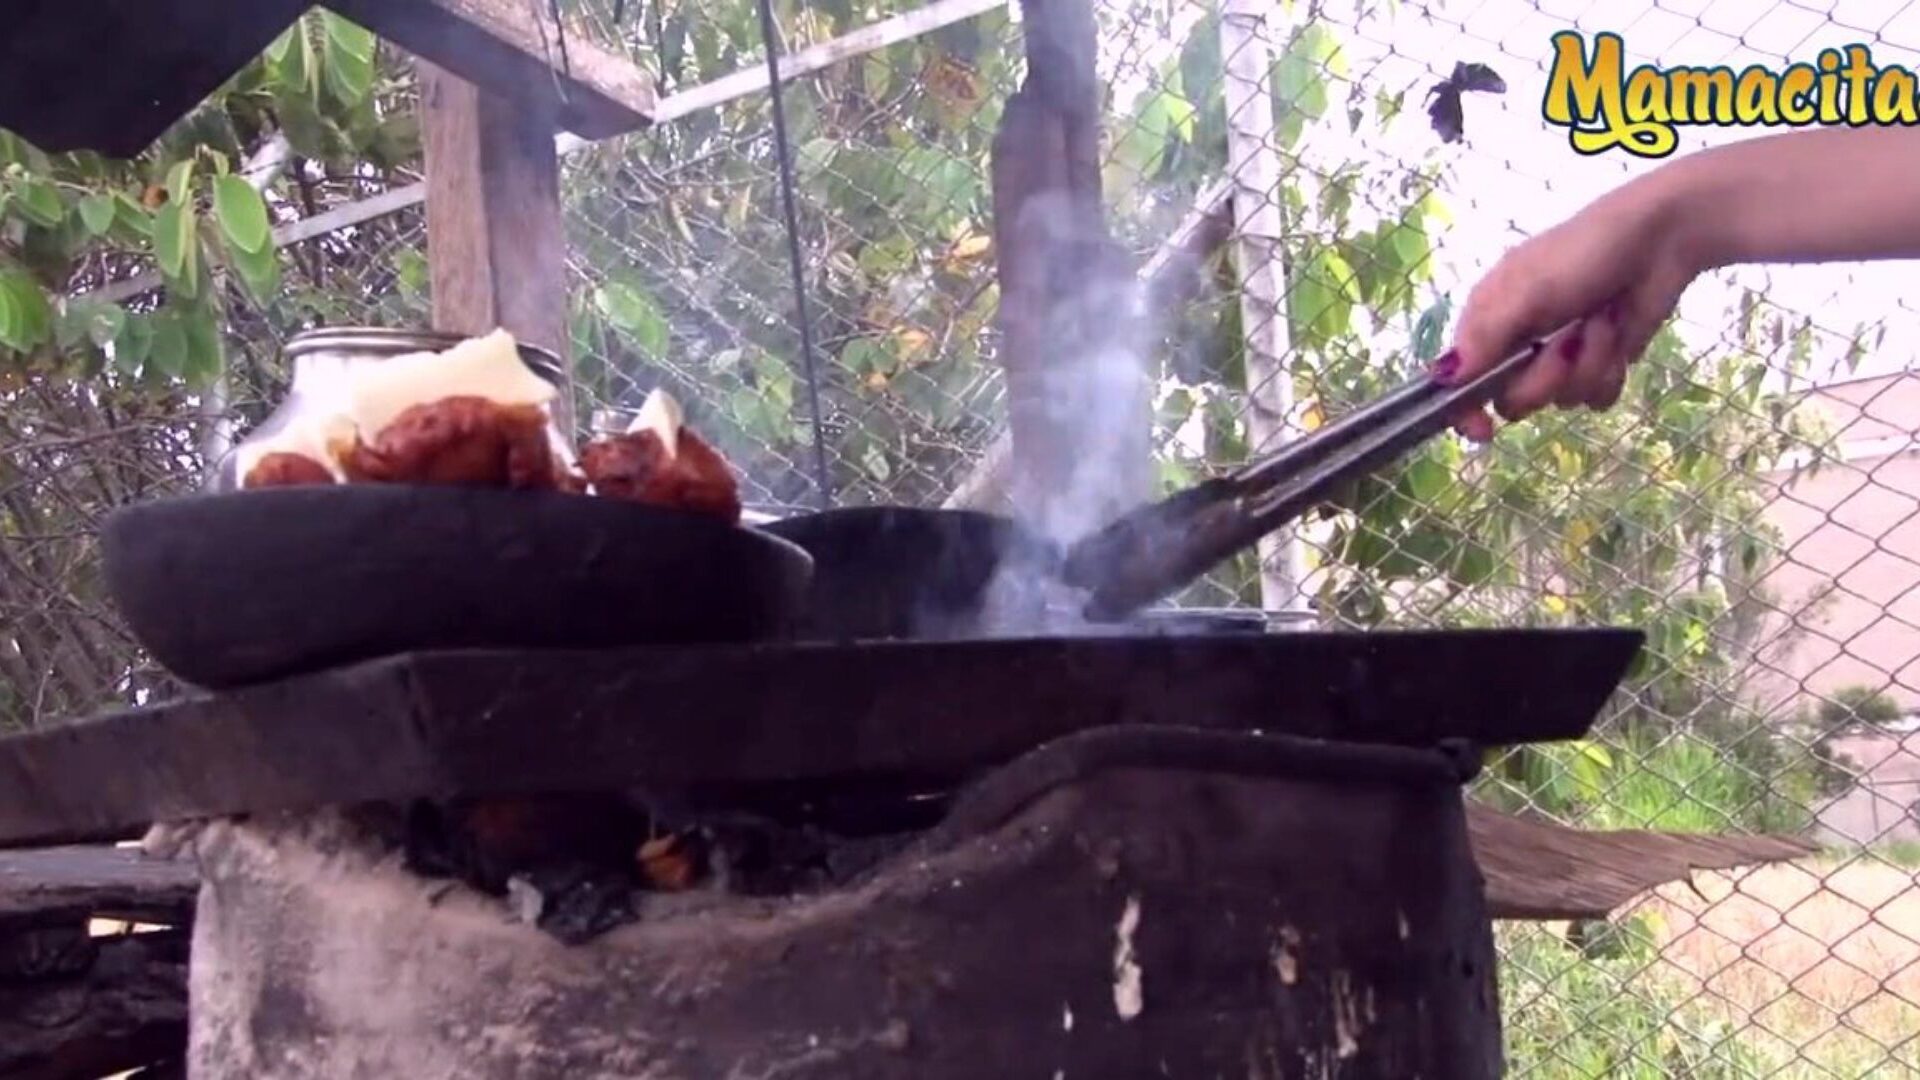 ماماسيتاز - بائع اللحوم الكولومبي شديد الحرارة يشتهي نوعًا مختلفًا من اللحوم